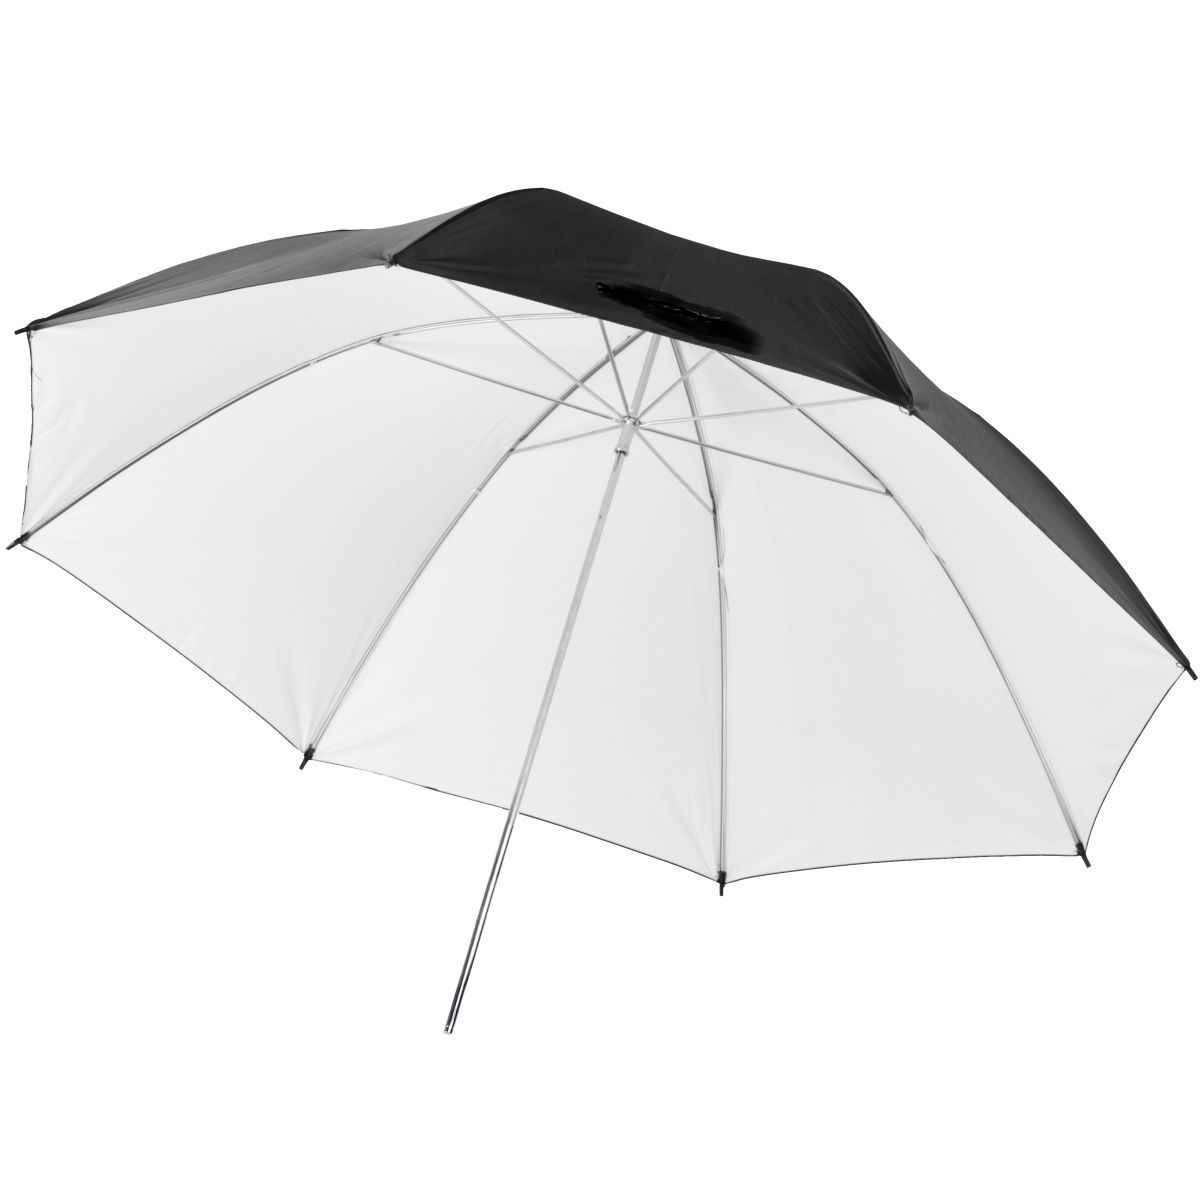 Studiový fotografický odrazový bílý - černý deštník, 102 cm 